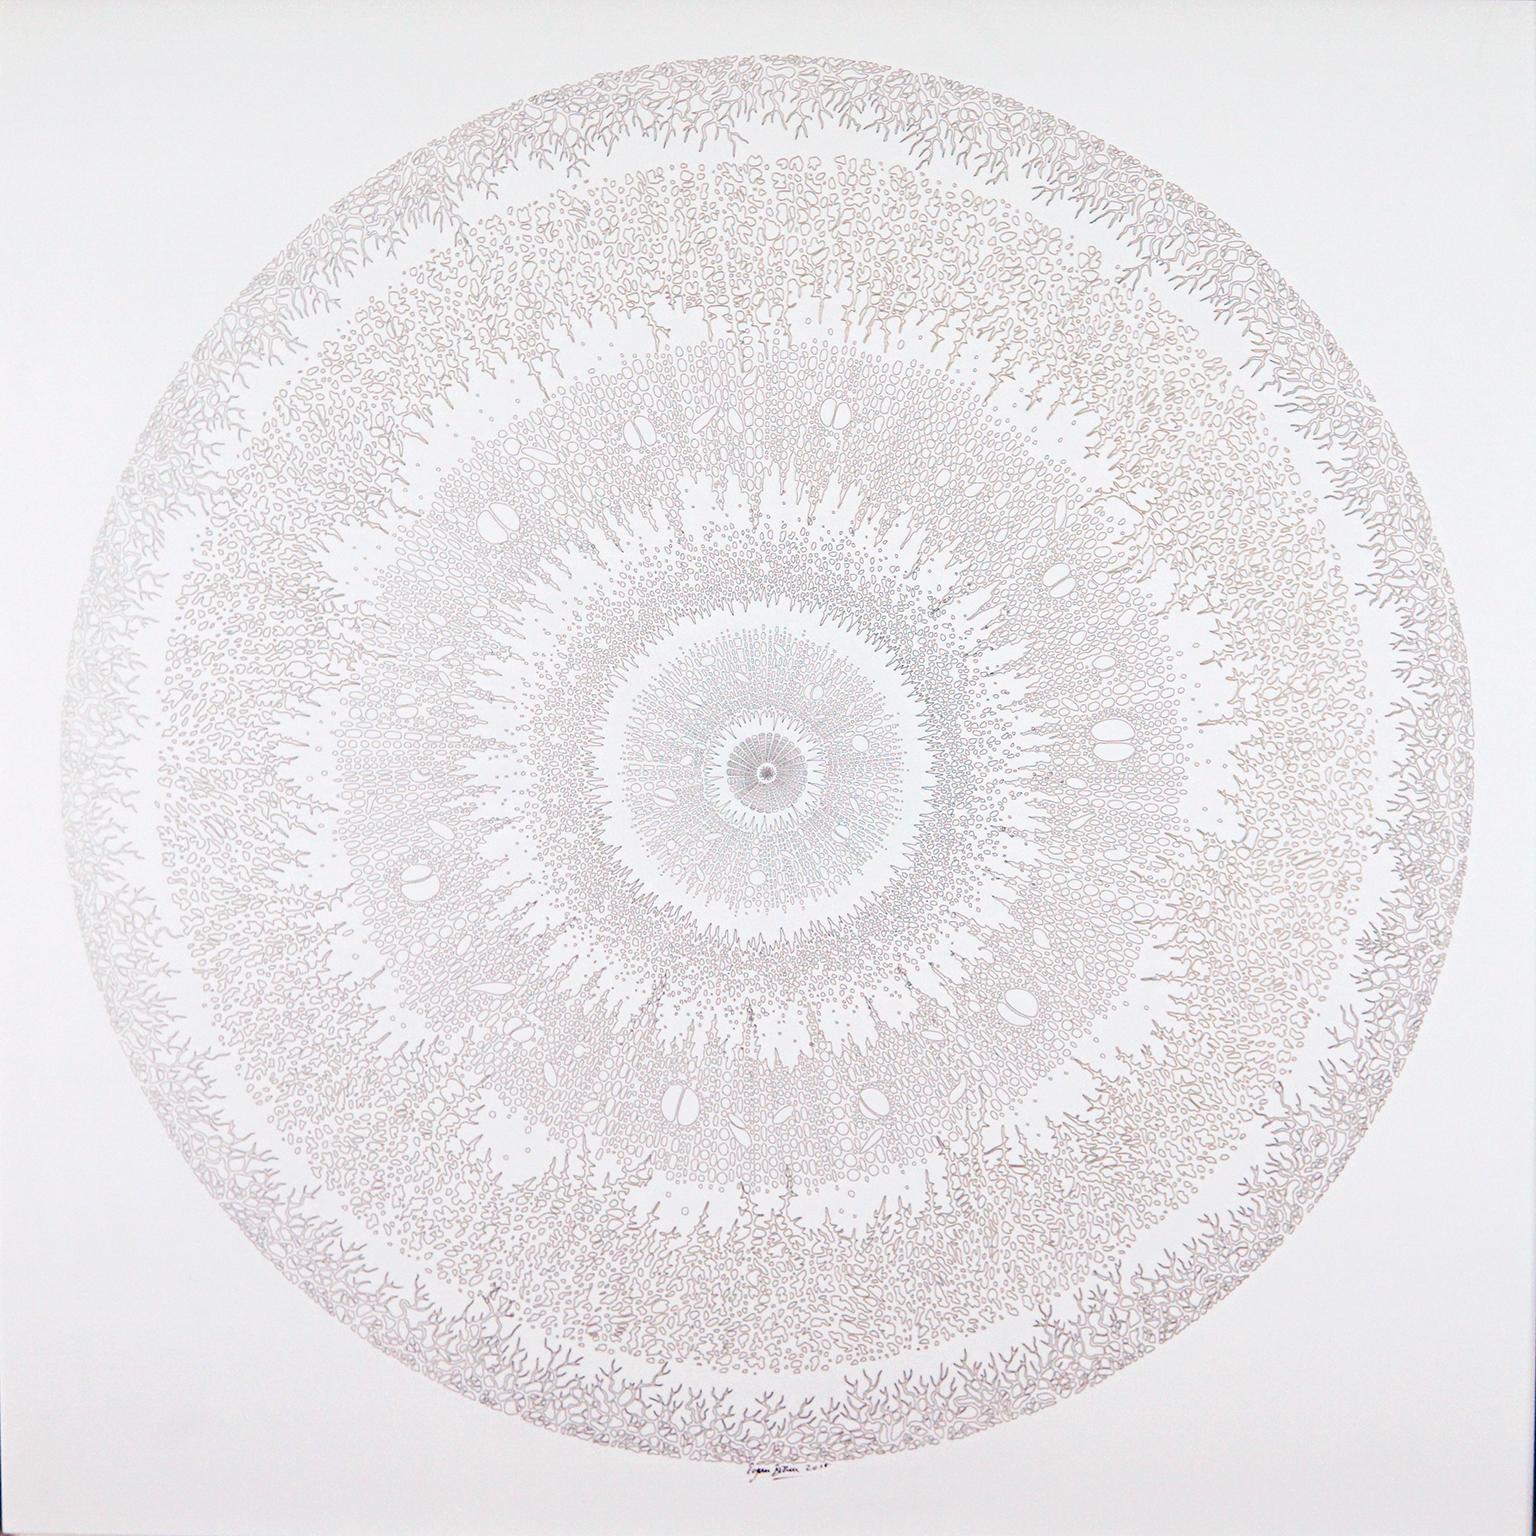 Rogan Brown Abstract Painting - Mandala Variations - Silver 2